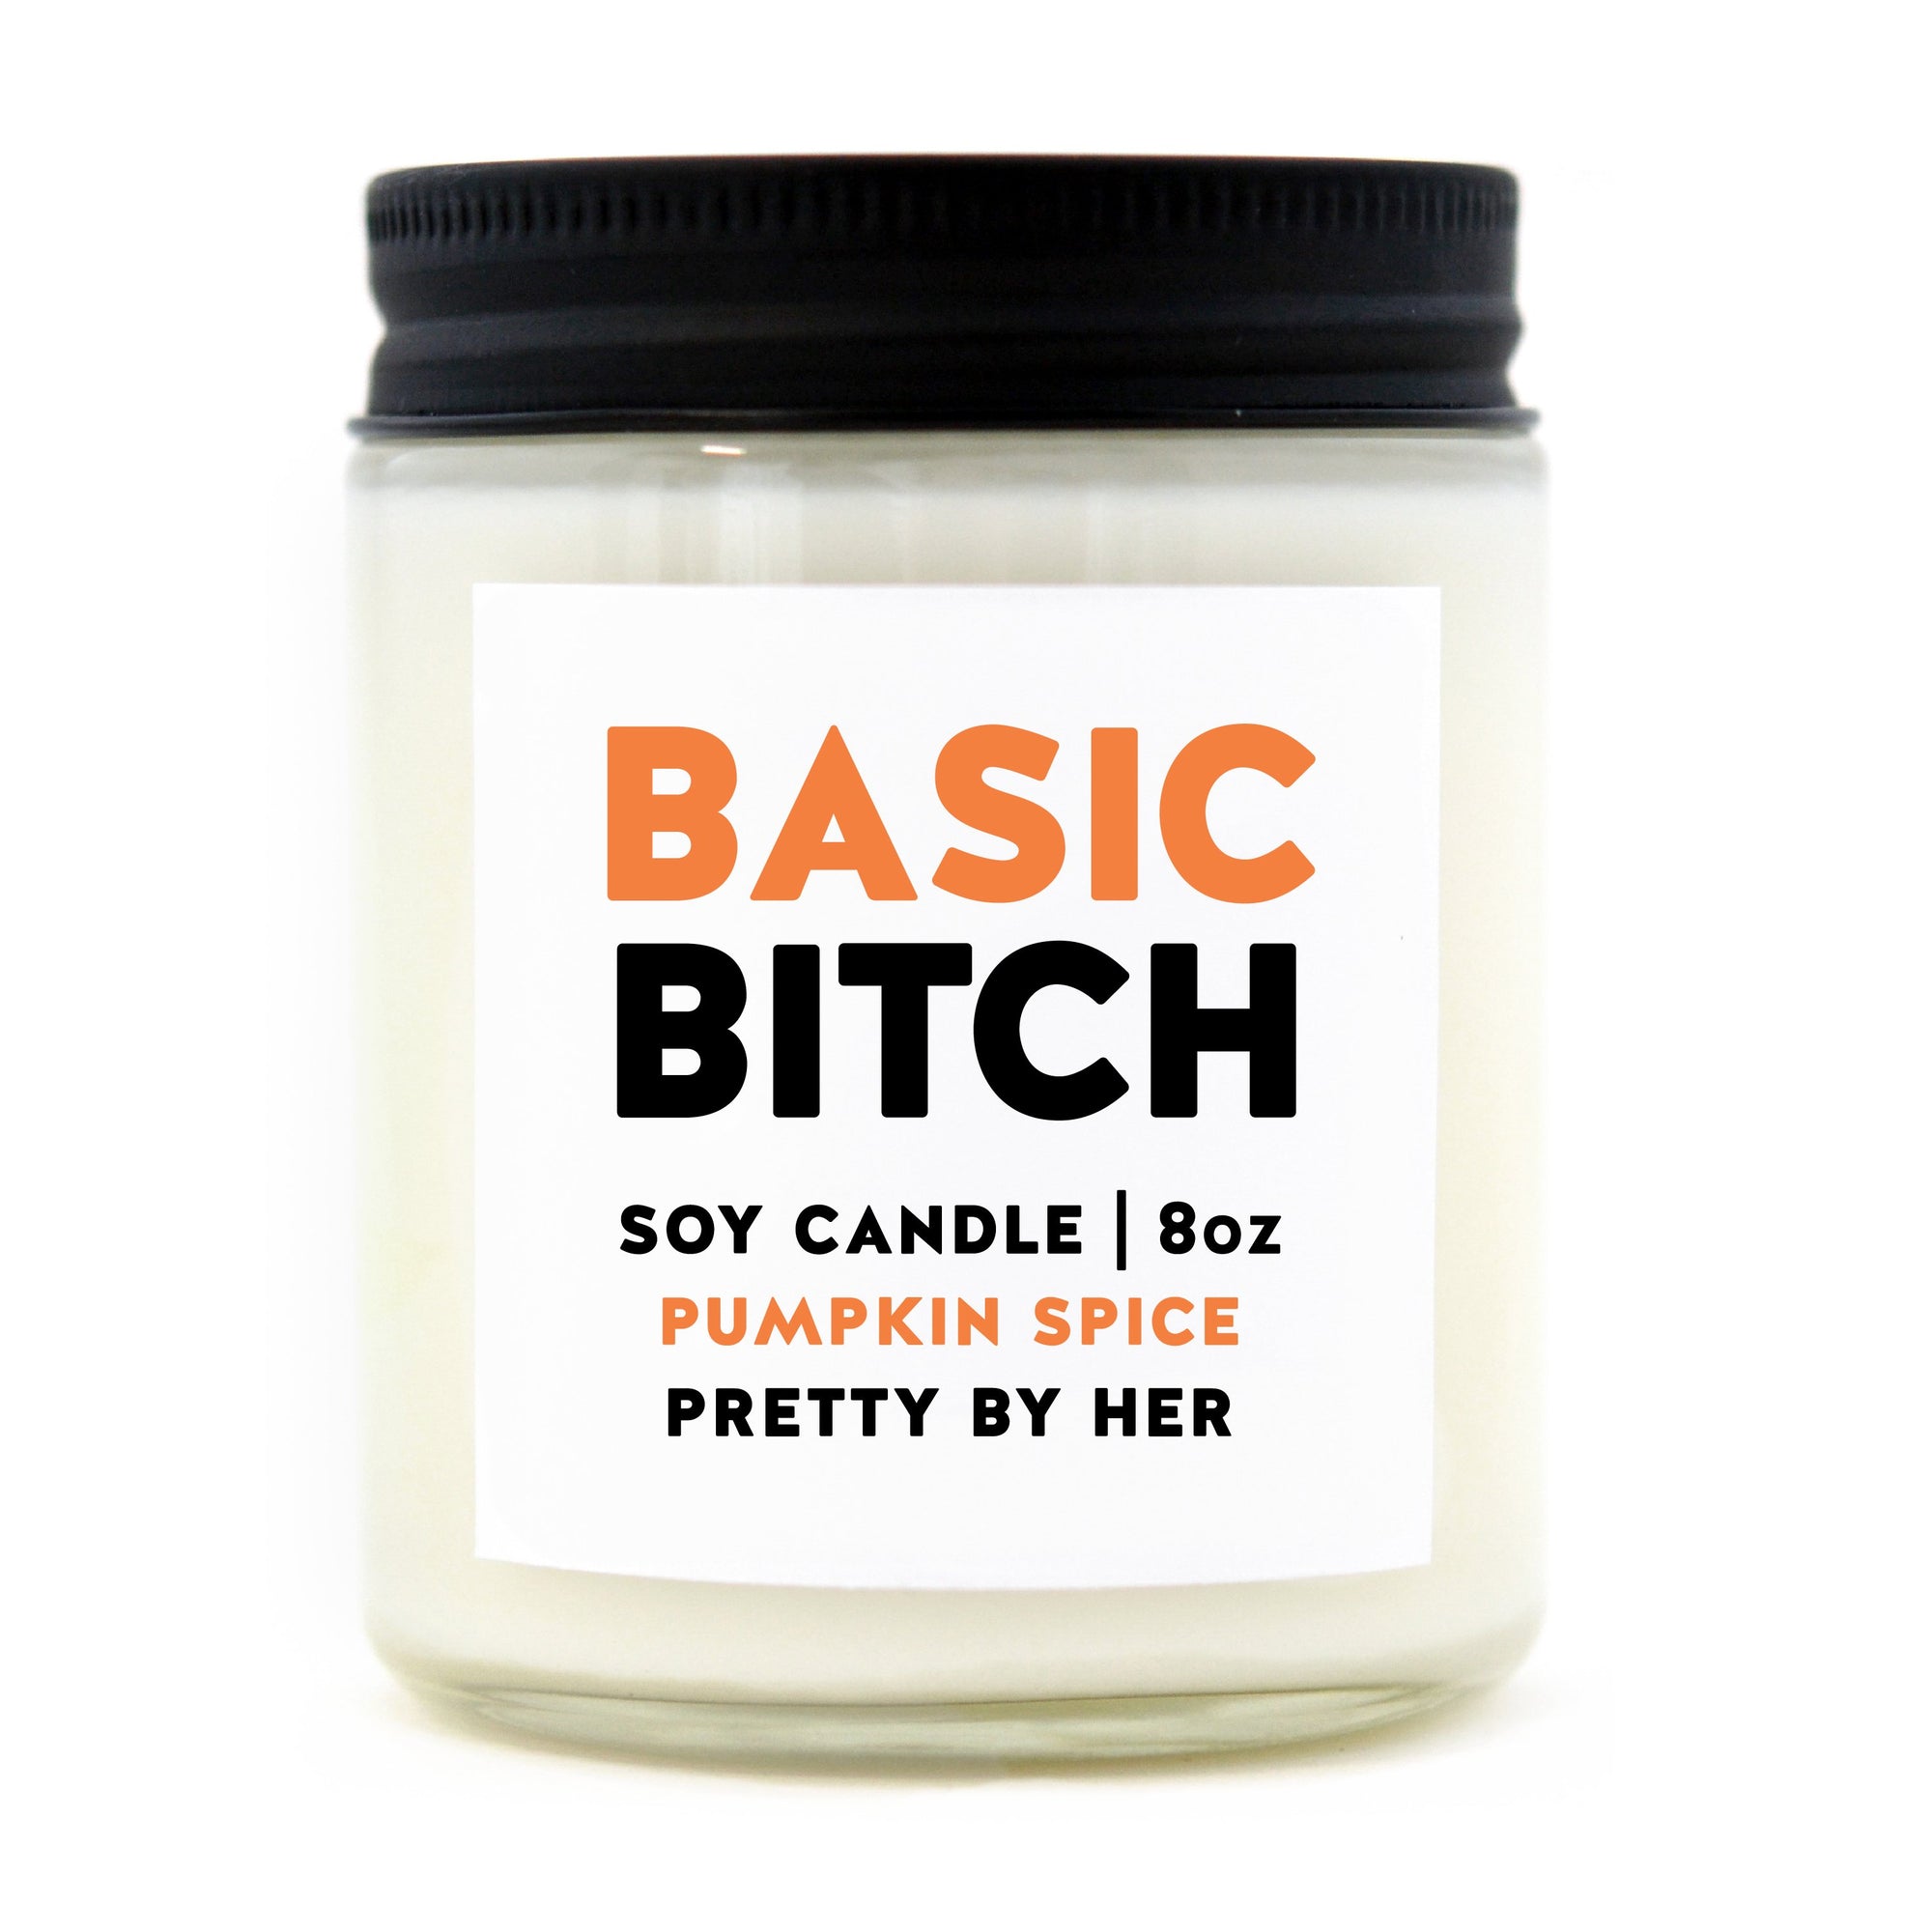 Soy candle - Basic Bitch